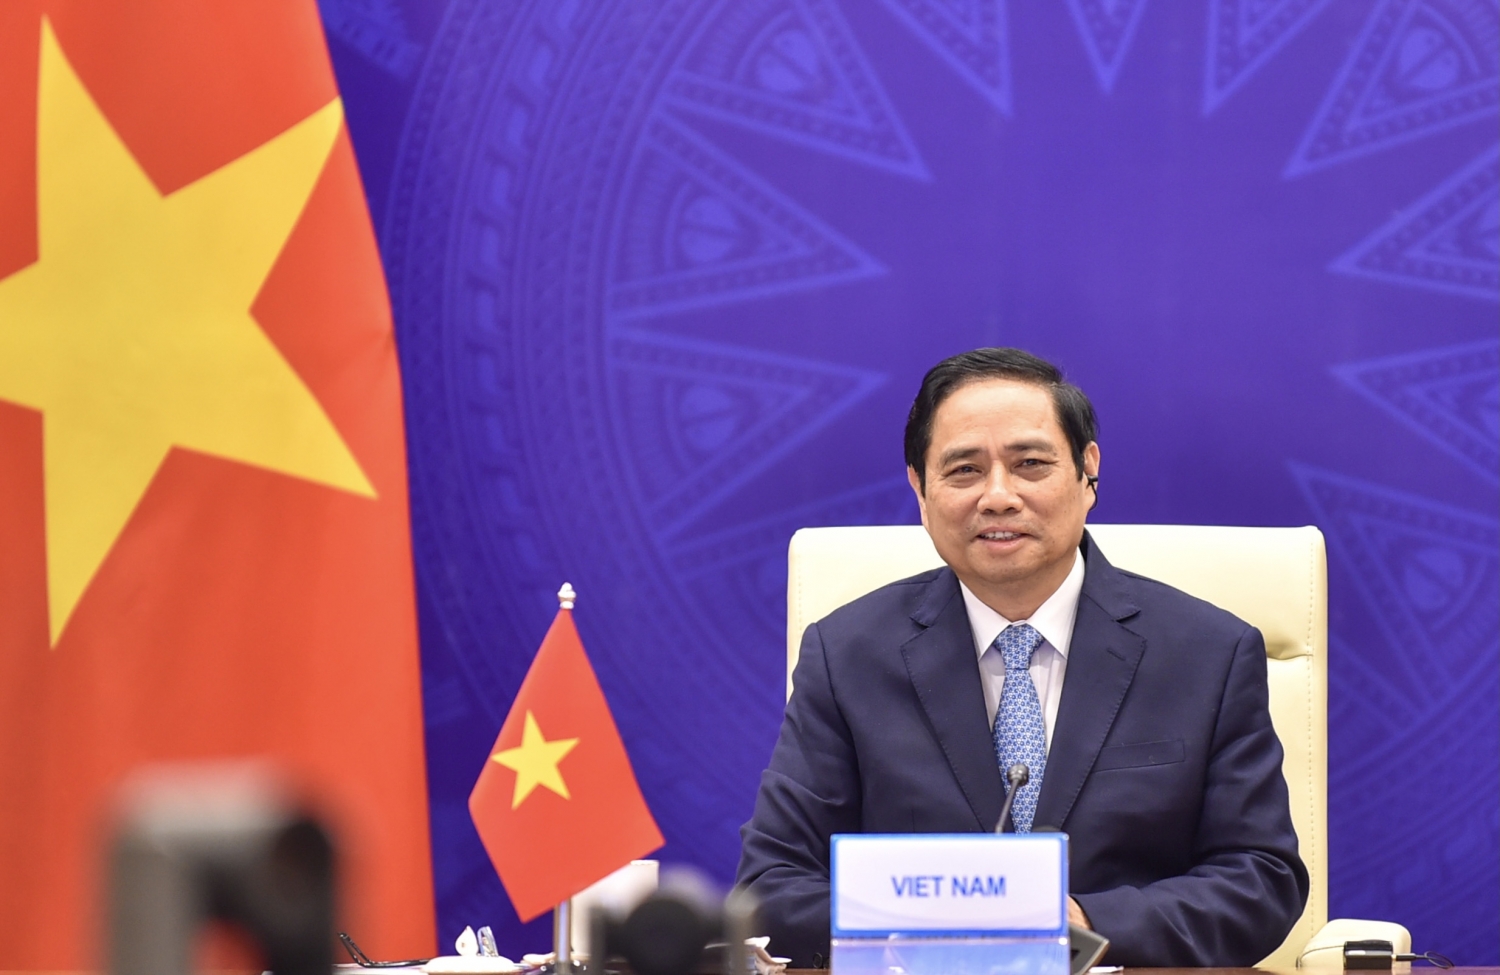 Bài phát biểu của Thủ tướng tại Hội nghị Thượng đỉnh Hợp tác Tiểu vùng Mekong mở rộng lần thứ 7